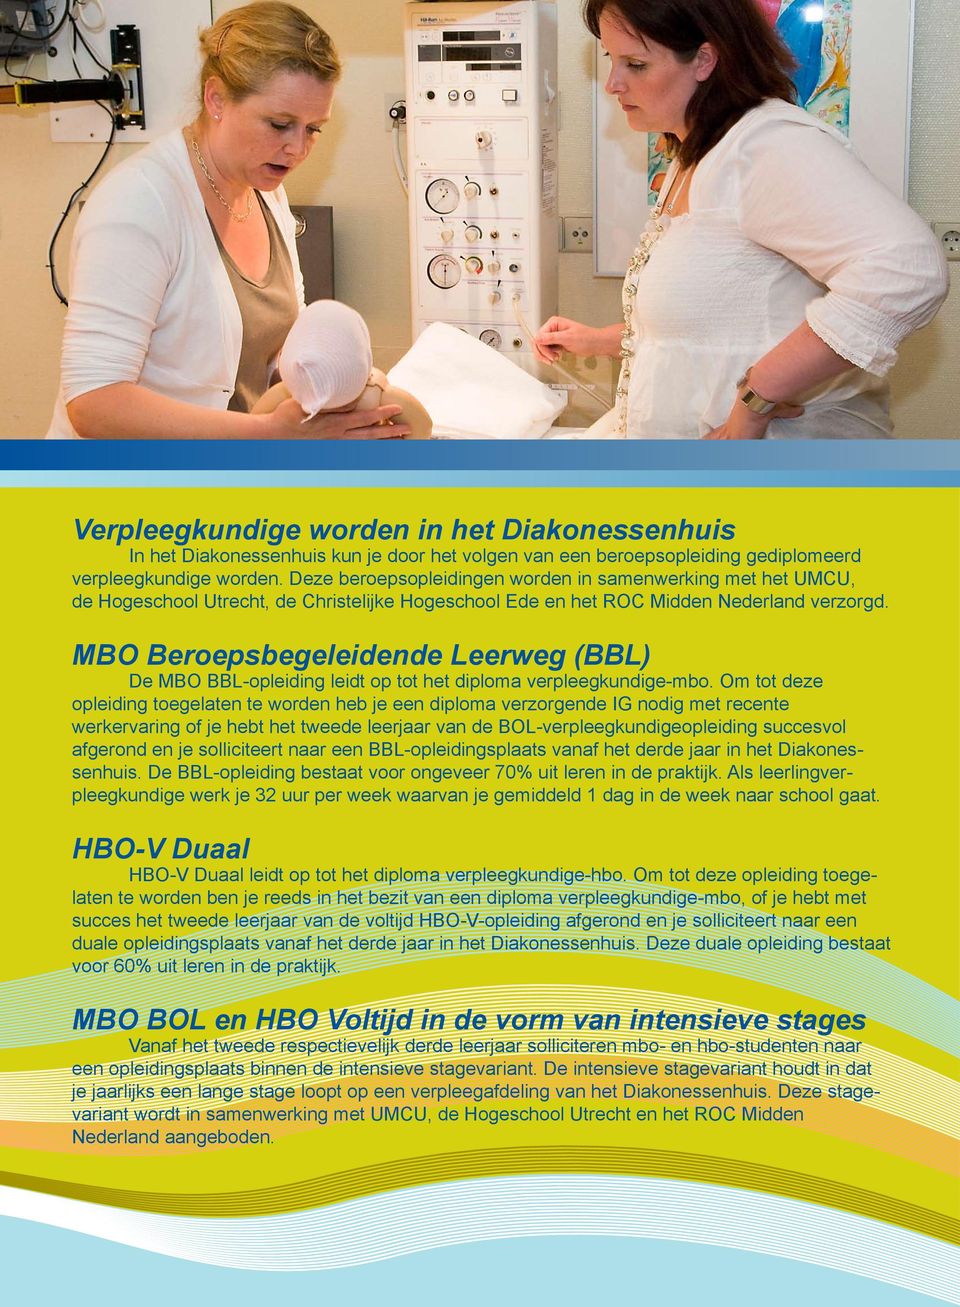 MBO Beroepsbegeleidende Leerweg (BBL) De MBO BBL-opleiding leidt op tot het diploma verpleegkundige-mbo.